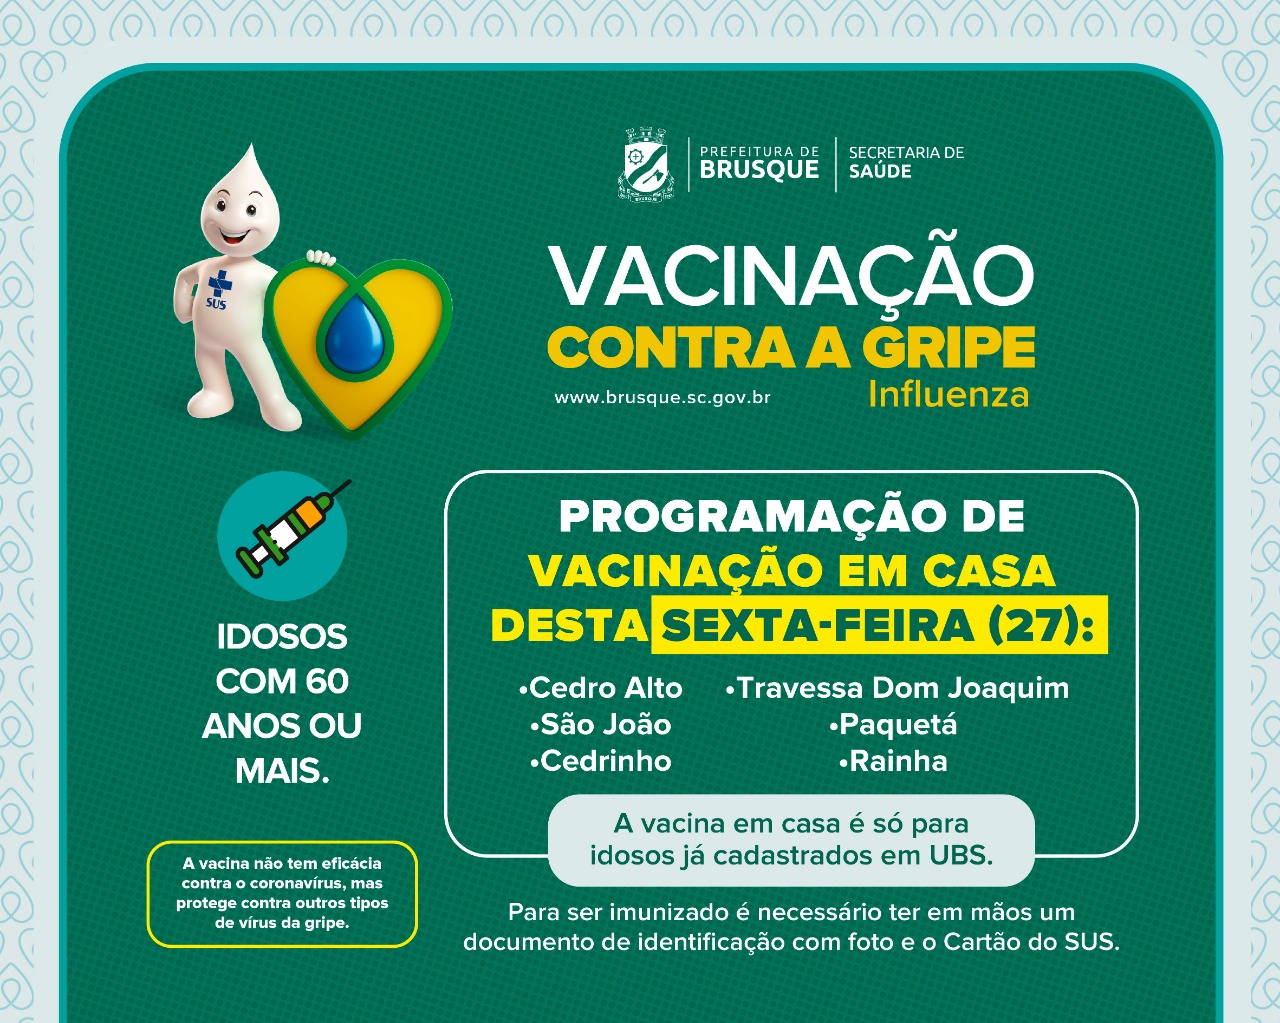 H1N1: Moradores do Cedro Alto, São João, Cedrinho, Travessa Dom Joaquim, Paquetá e Rainha recebem equipe de vacinação da prefeitura nesta sexta-feira (27)